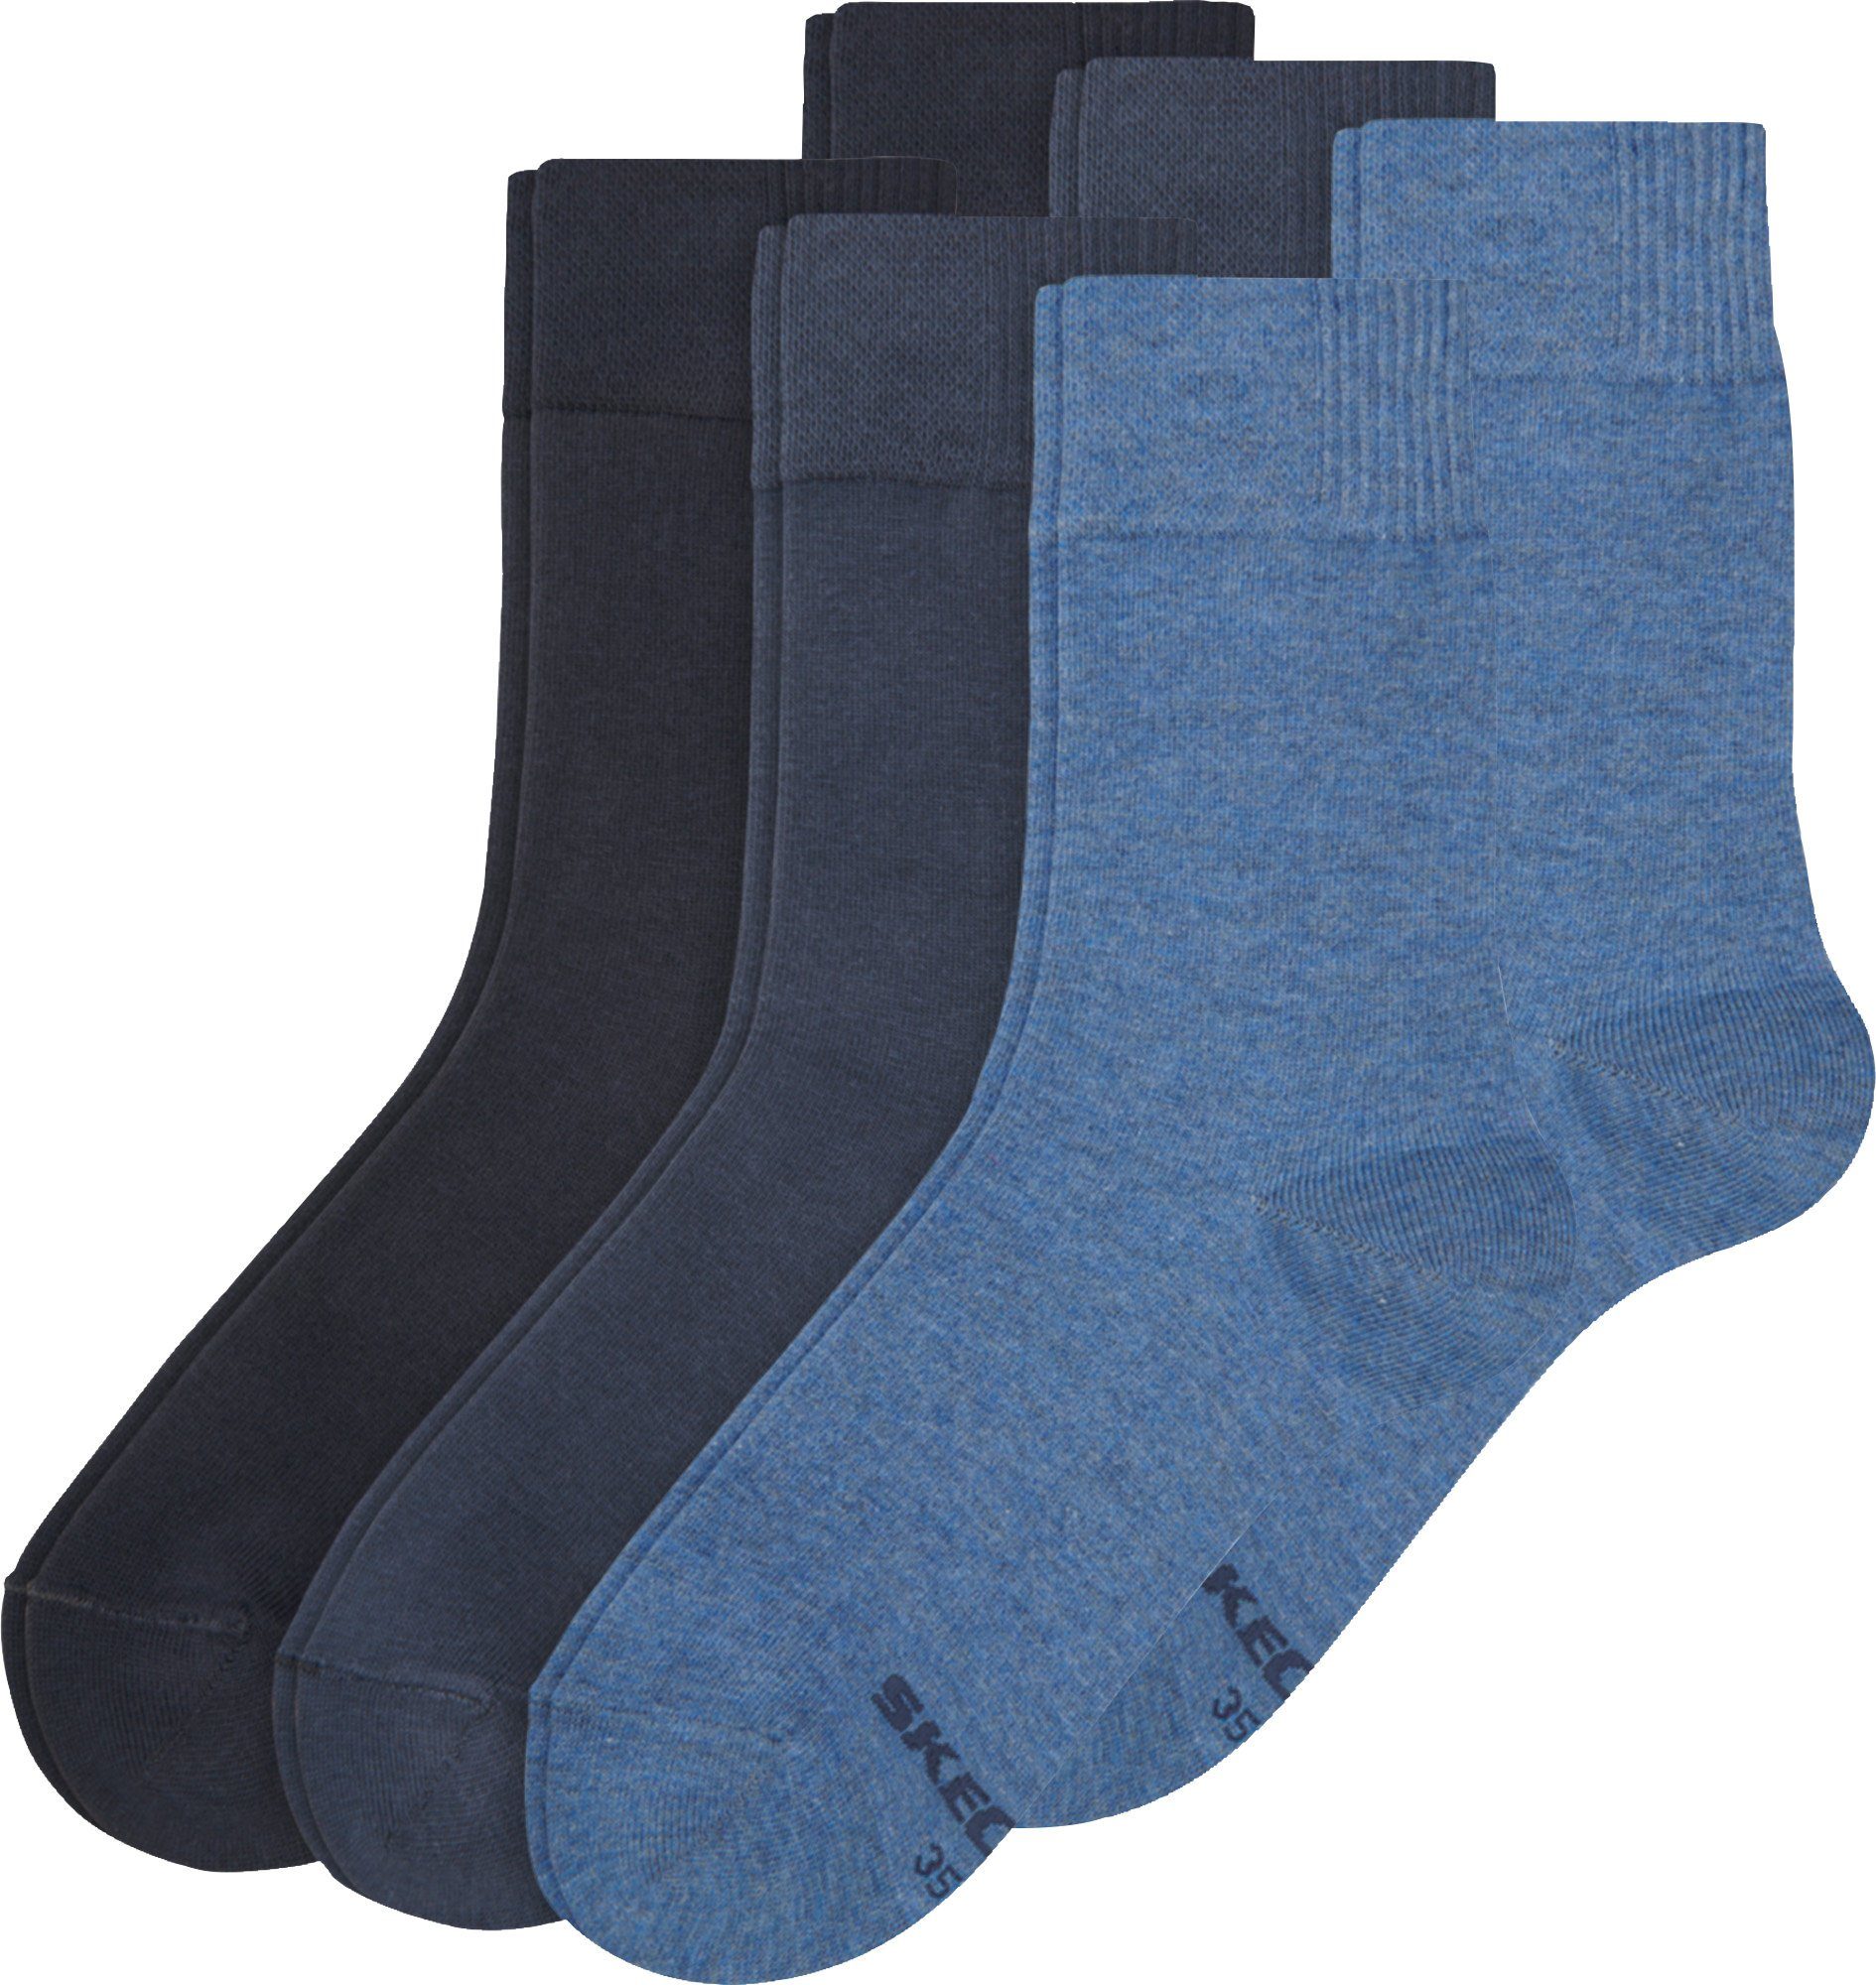 Socken Uni Damen-Socken blau Skechers 6 Paar